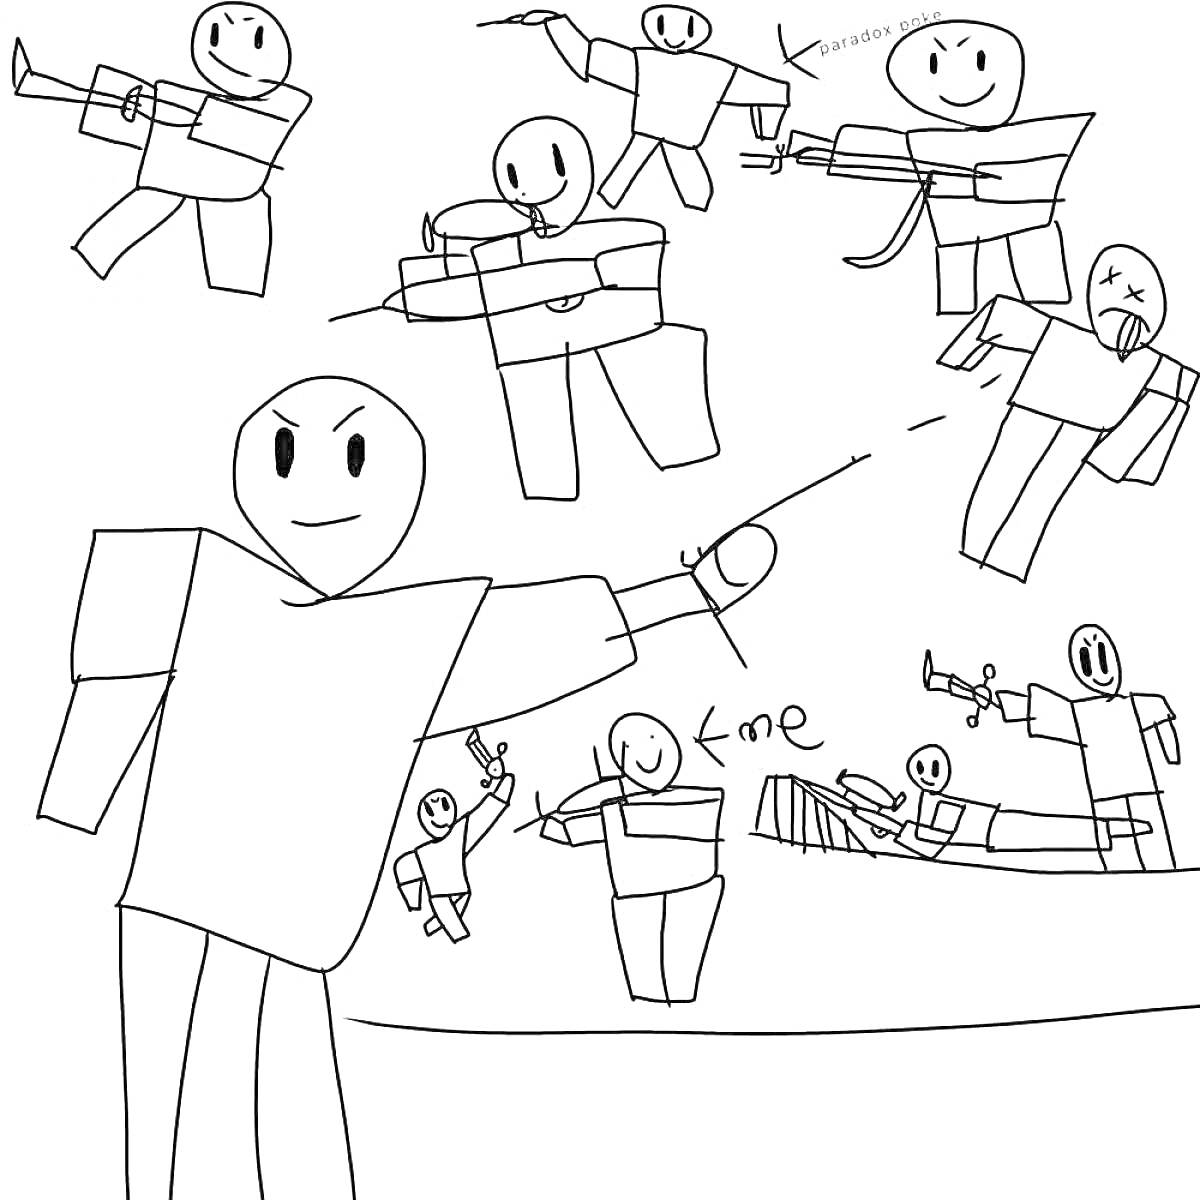 Раскраска Roblox персонажи с оружием, держащие разное оружие, стреляющие и стоящие в боевых позах